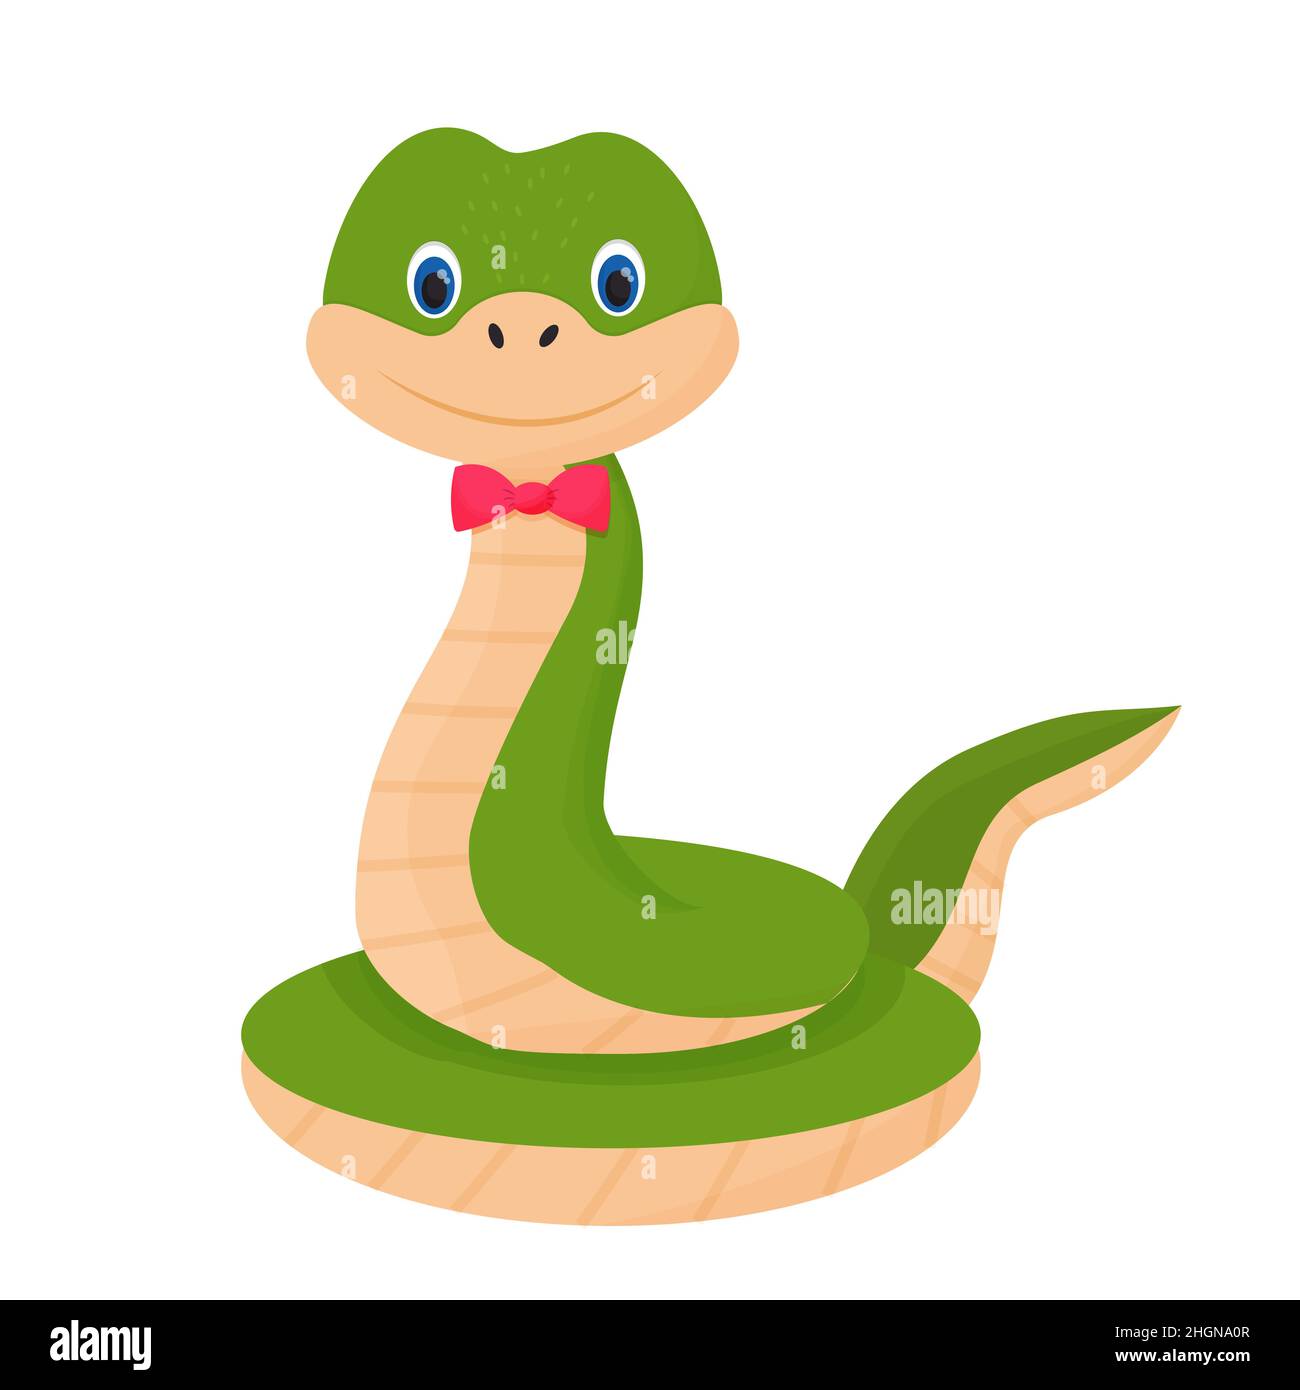 Serpente simpatico e allegro, sorridente in stile cartoon. Animale infantile, clip art rettile isolato su sfondo bianco. Illustrazione vettoriale Illustrazione Vettoriale